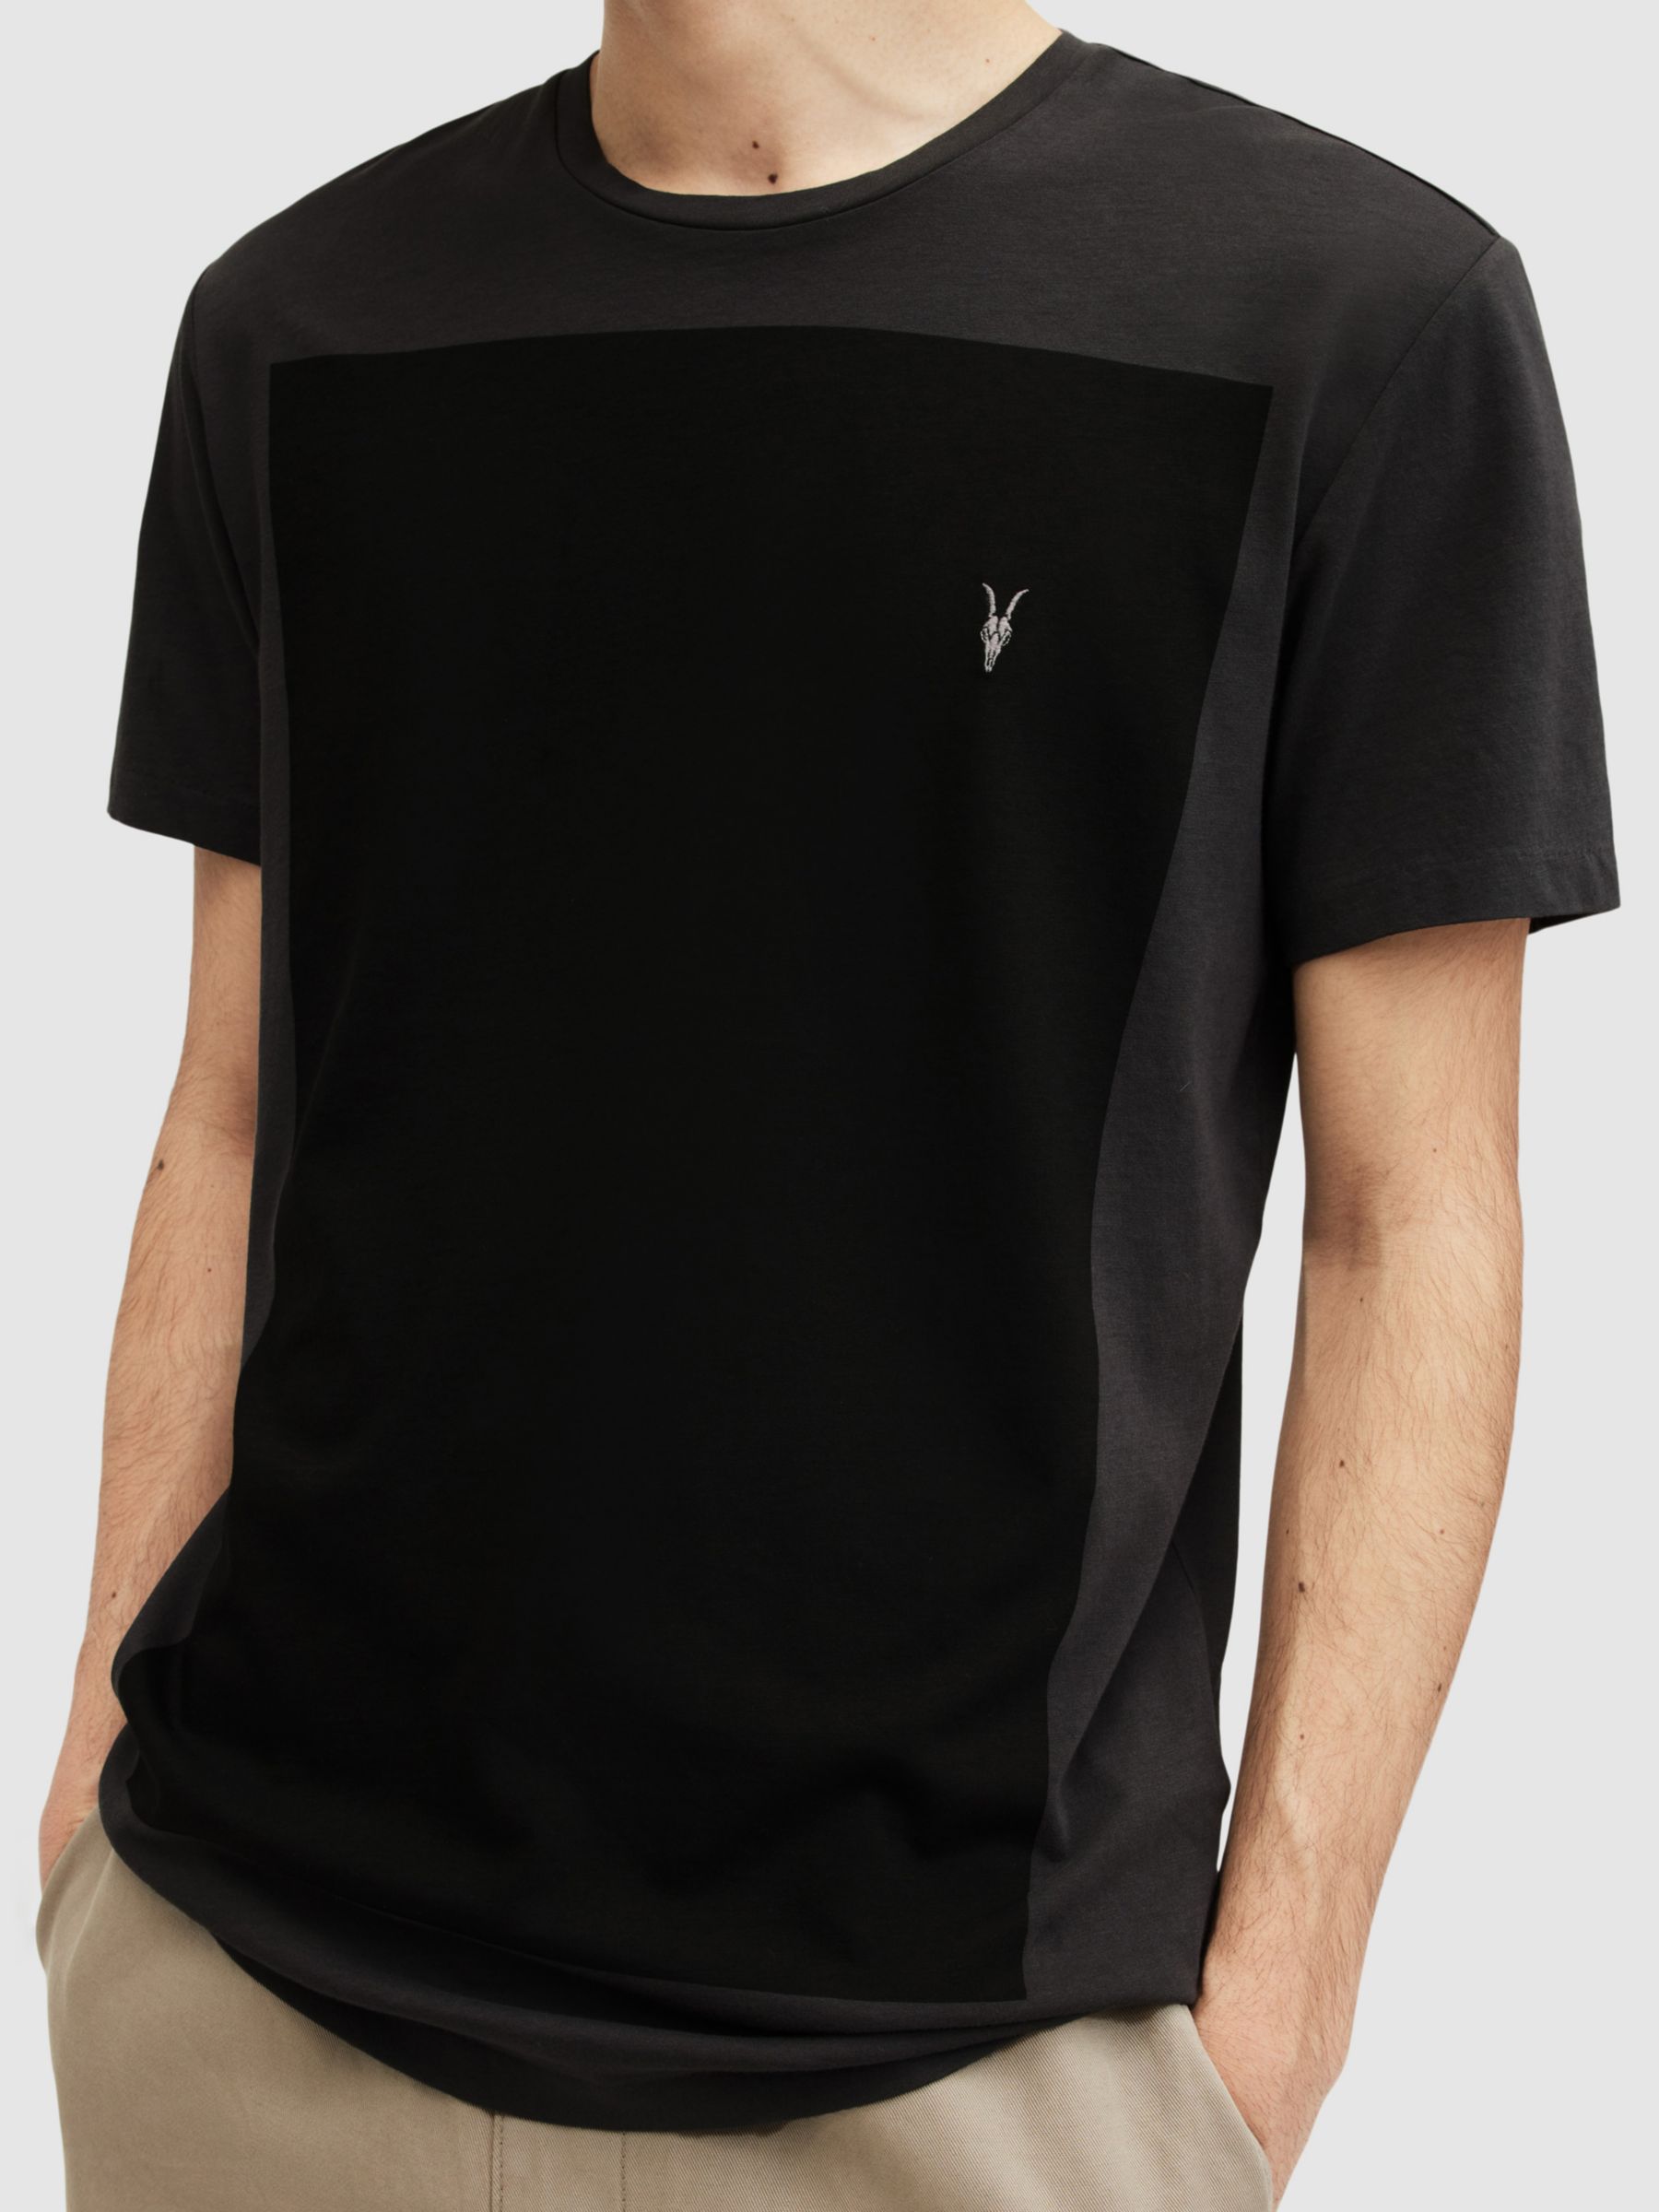 AllSaints Lobke Colour Block T-Shirt, Washed Black/Jet Black, XS